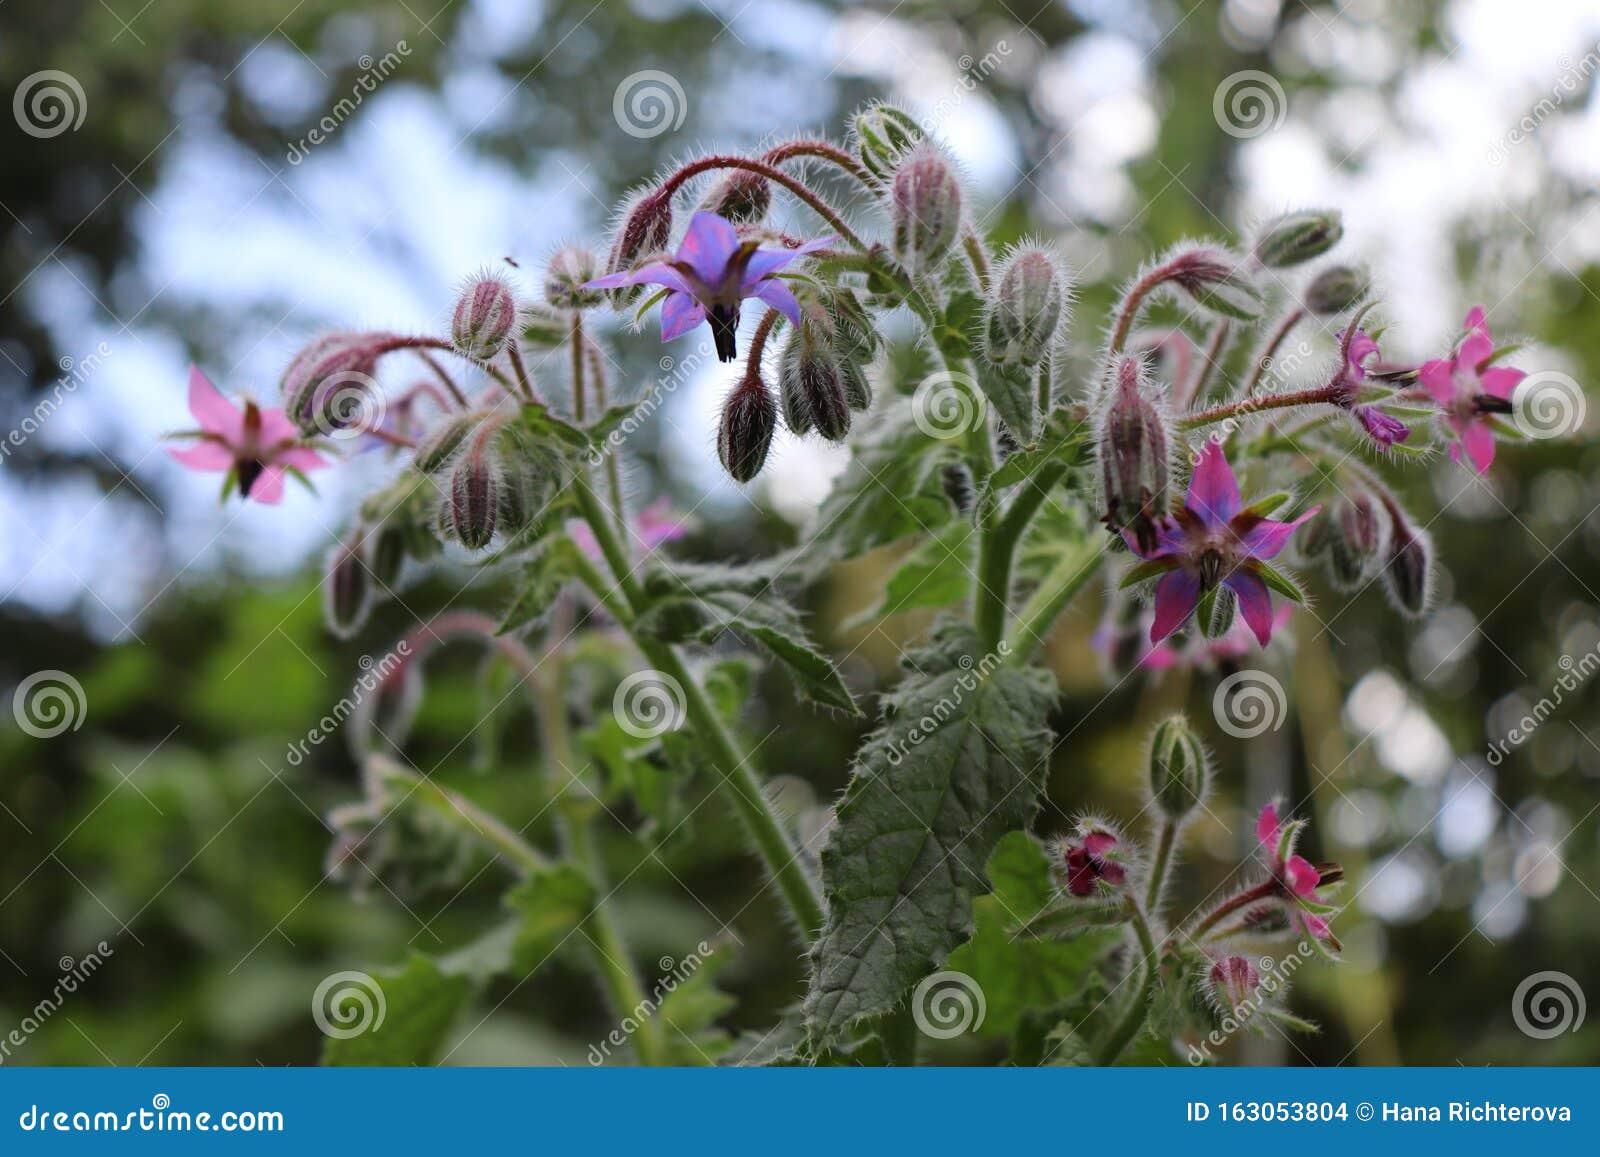 园林中的紫荆粉花紫草 又称星花 是每年开花的药草库存照片 图片包括有紫草 又称星花 是每年开花的药草